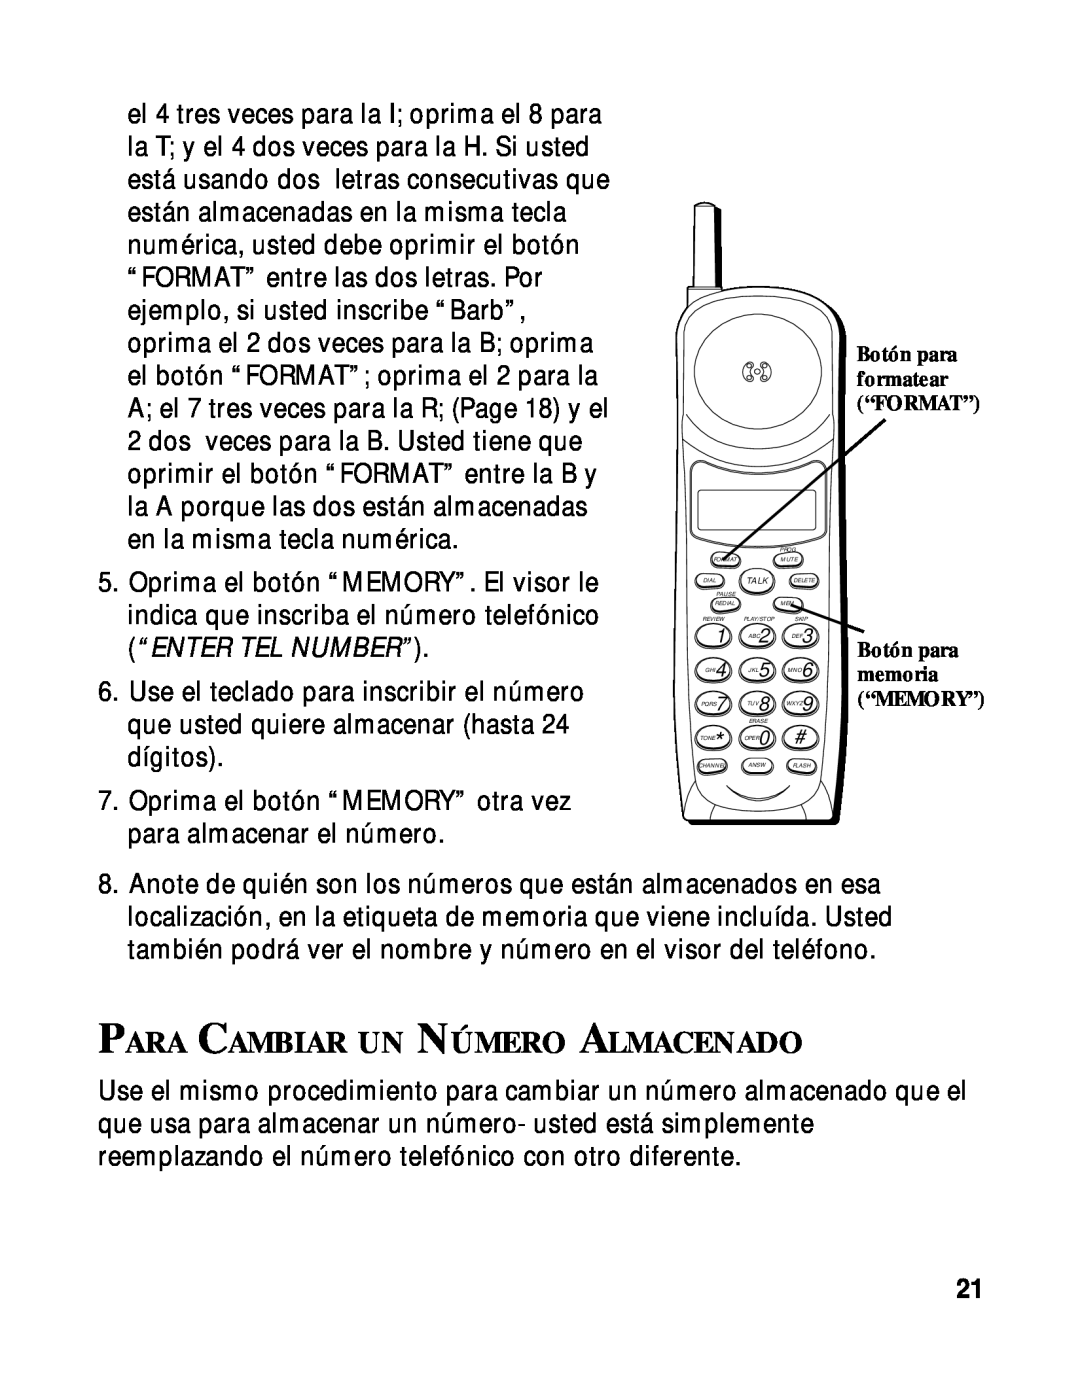 RCA 900 MHz manual Para Cambiar Un Número Almacenado, Botón para, memoria 